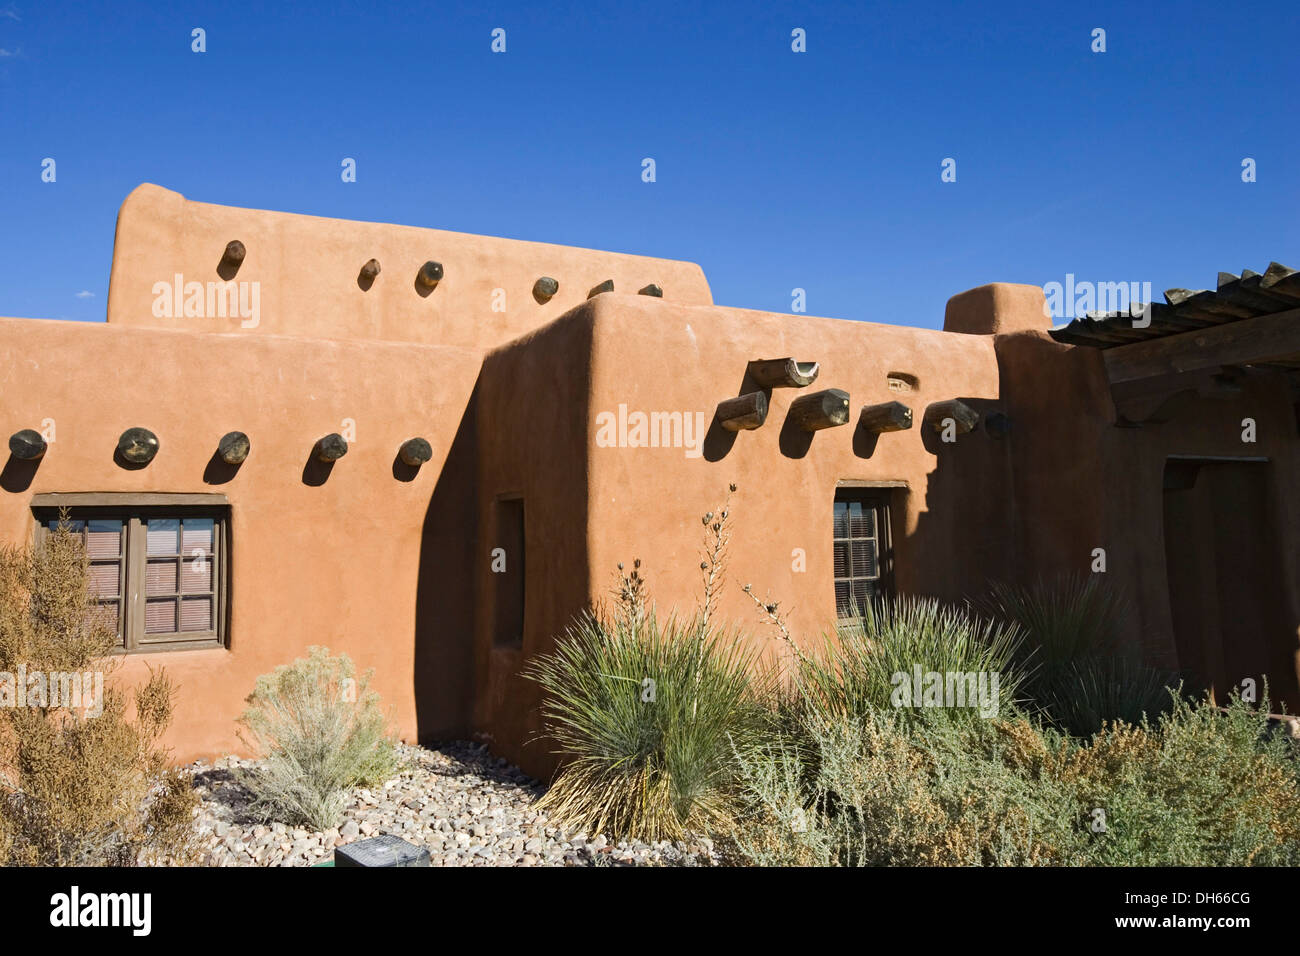 Centre des visiteurs de sable blanc, l'architecture de Adobe-Pueblo, White Sands National Monument, New Mexico, USA, Amérique du Nord Banque D'Images